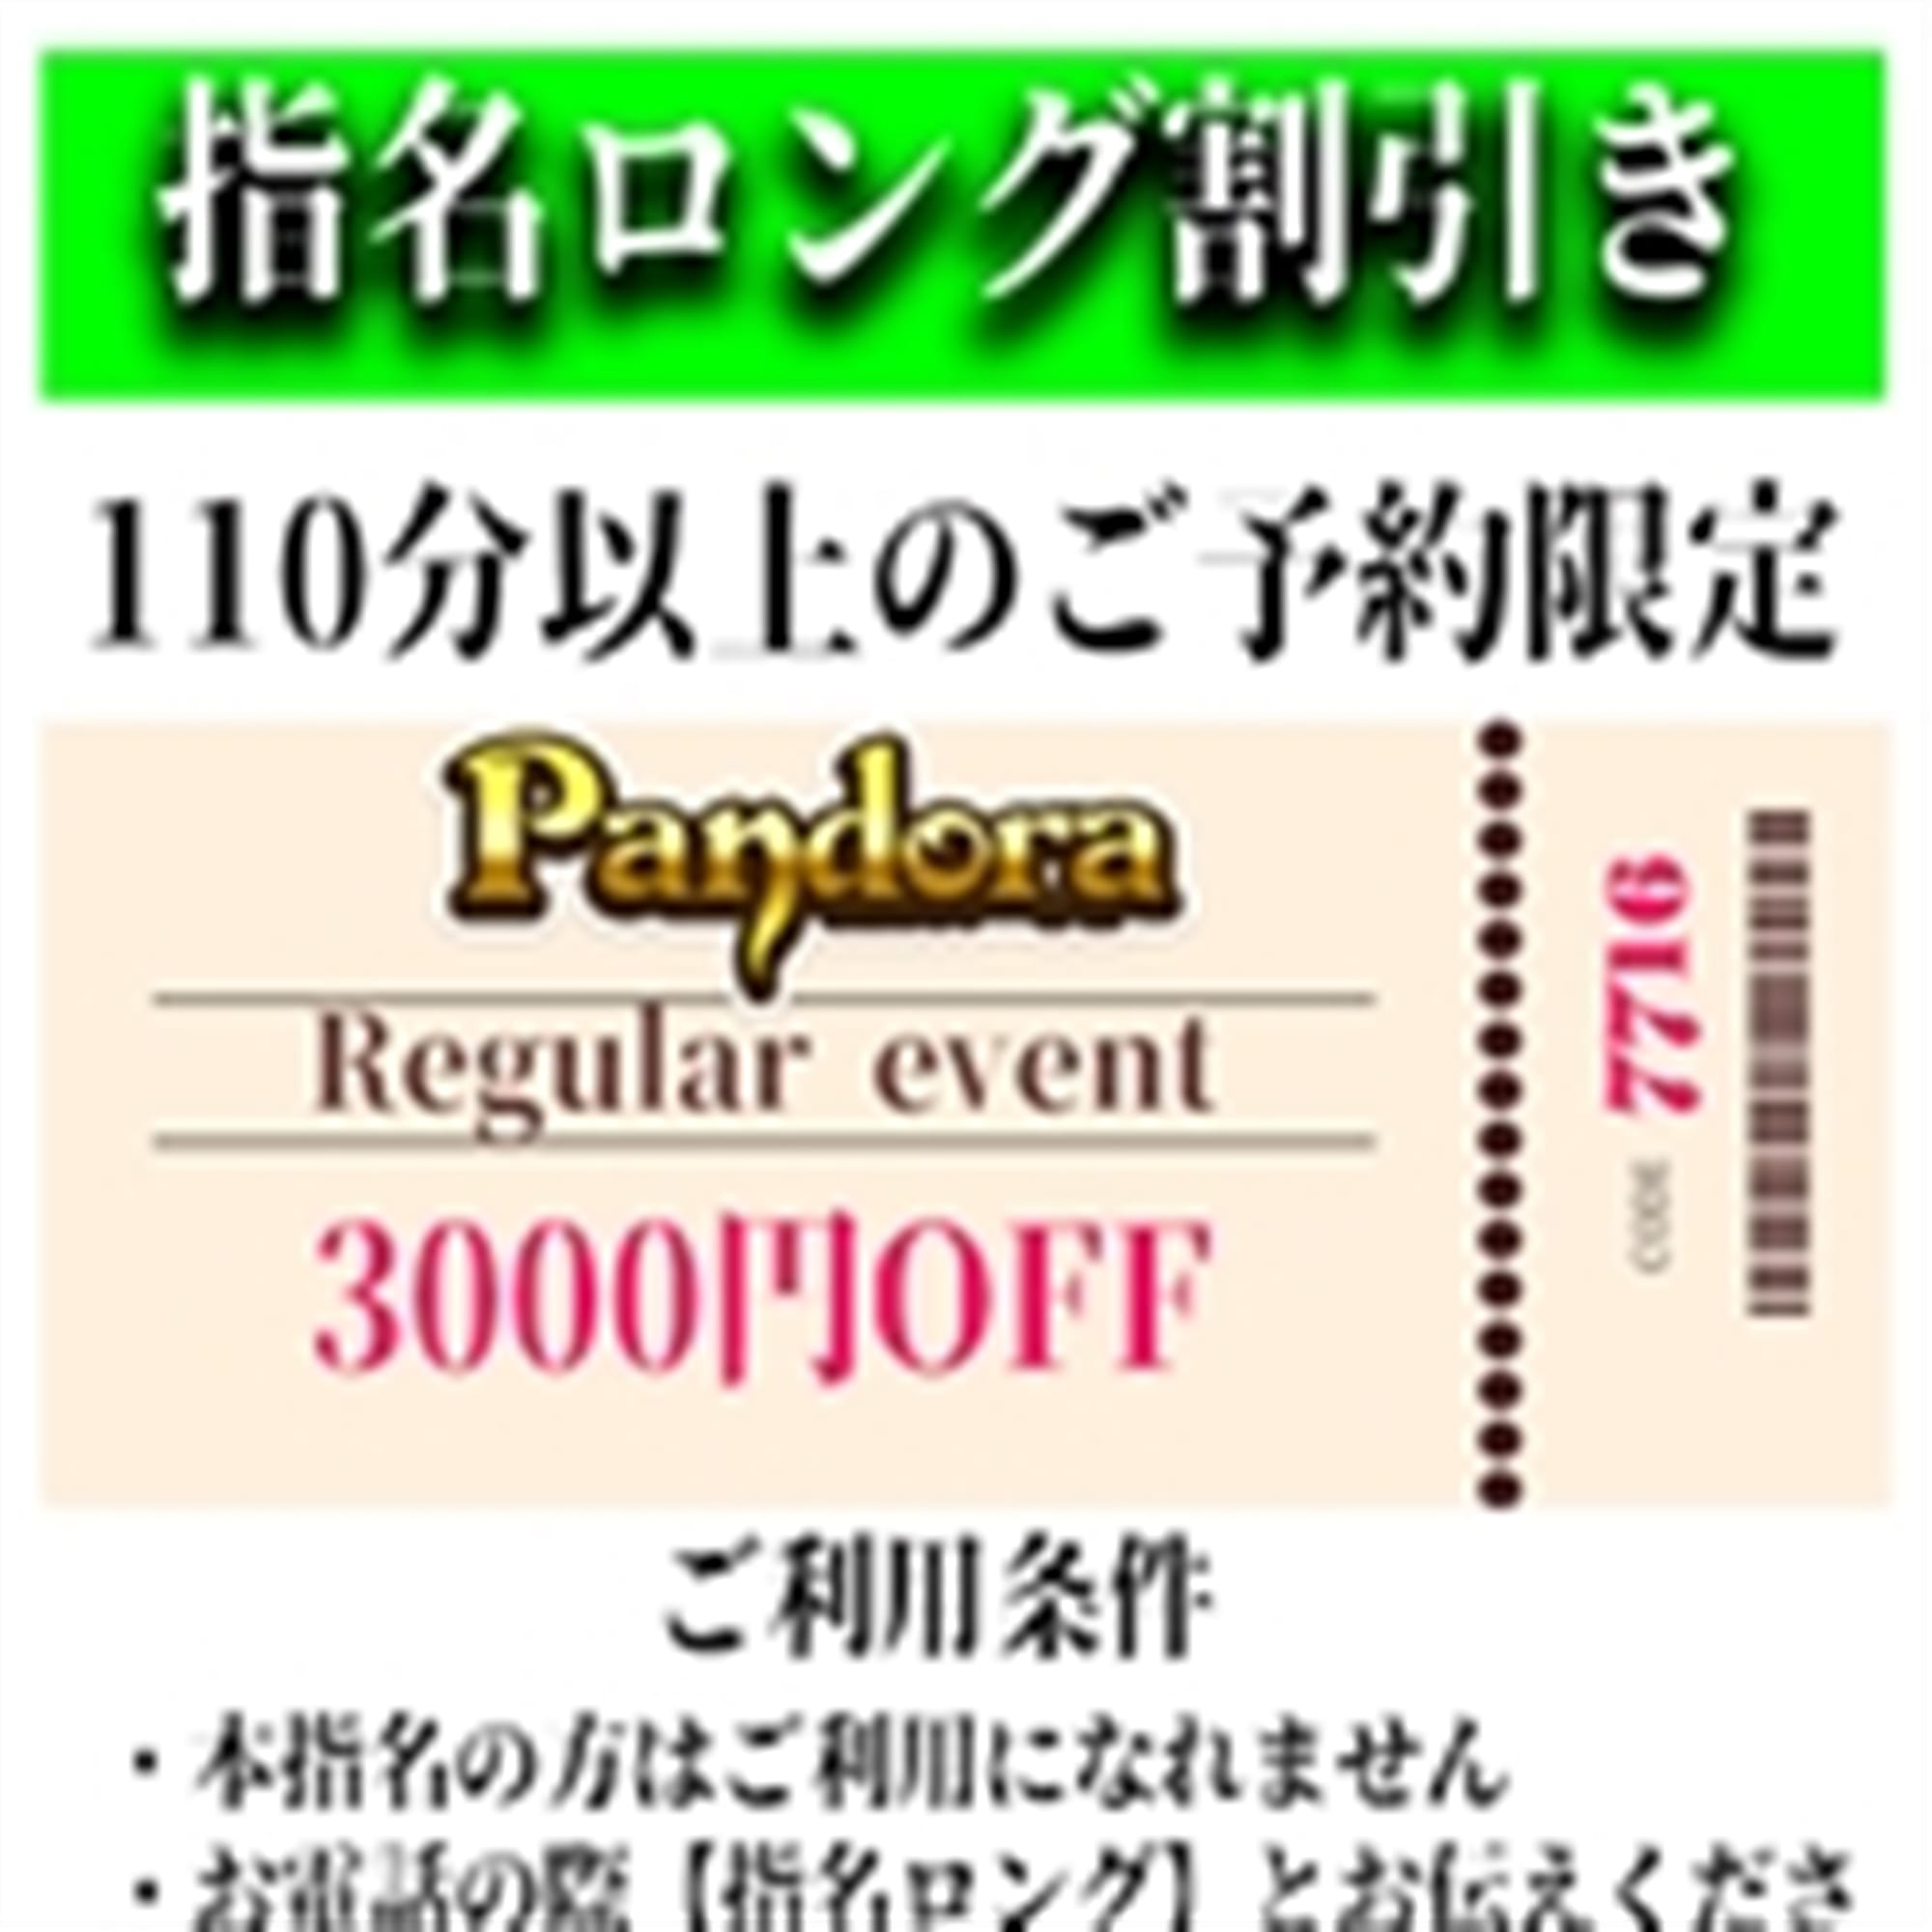 「ご指名のお客様も遊べるロングコース割引」04/26(金) 05:31 | Pandora(パンドラ)新潟のお得なニュース